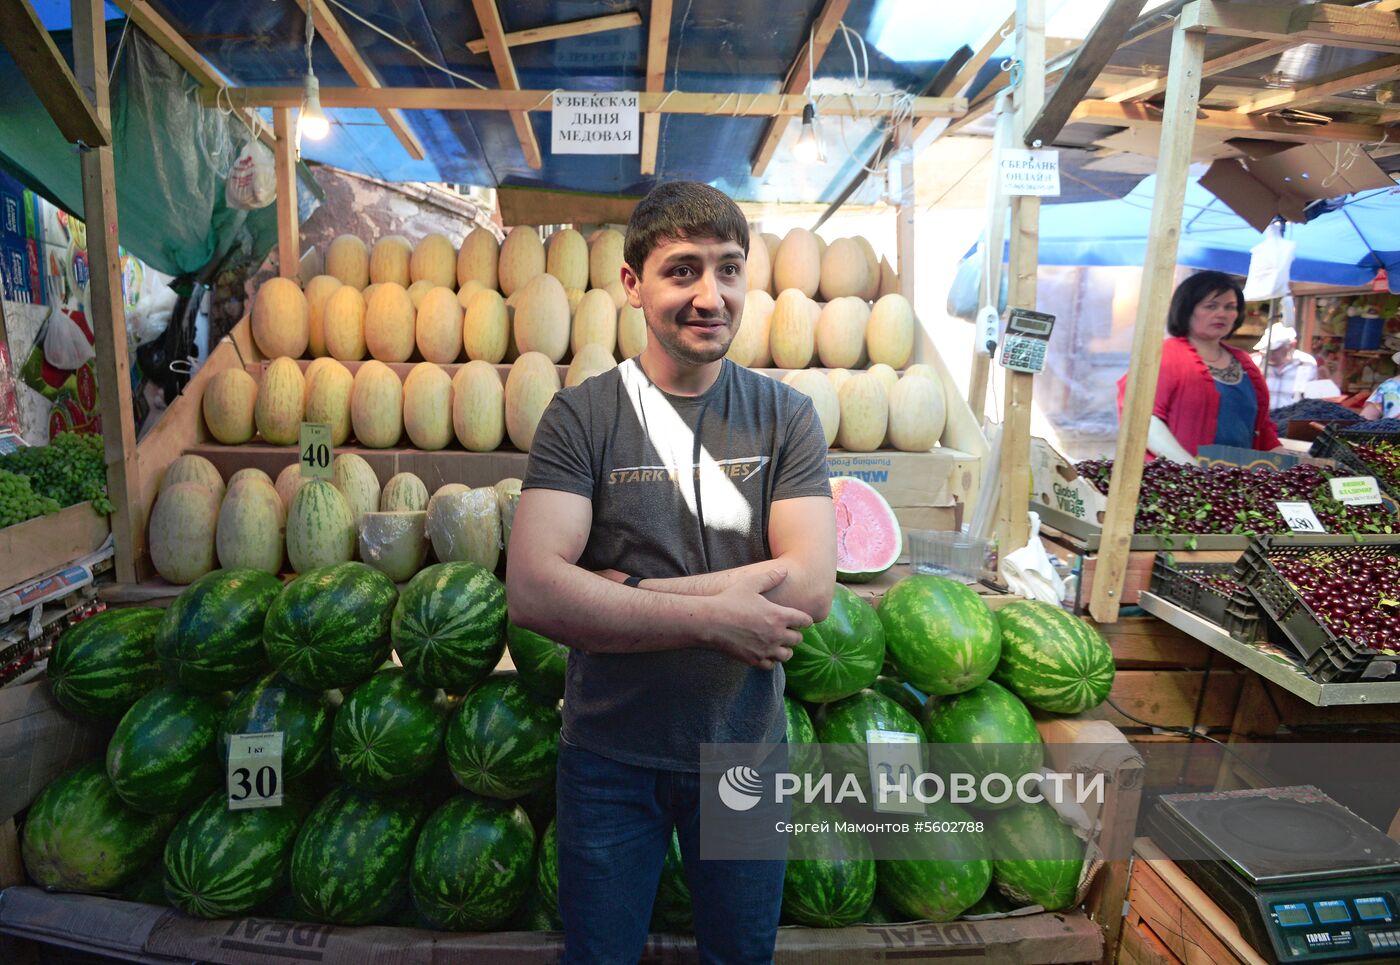 Продажа дынь и арбузов в Москве. 